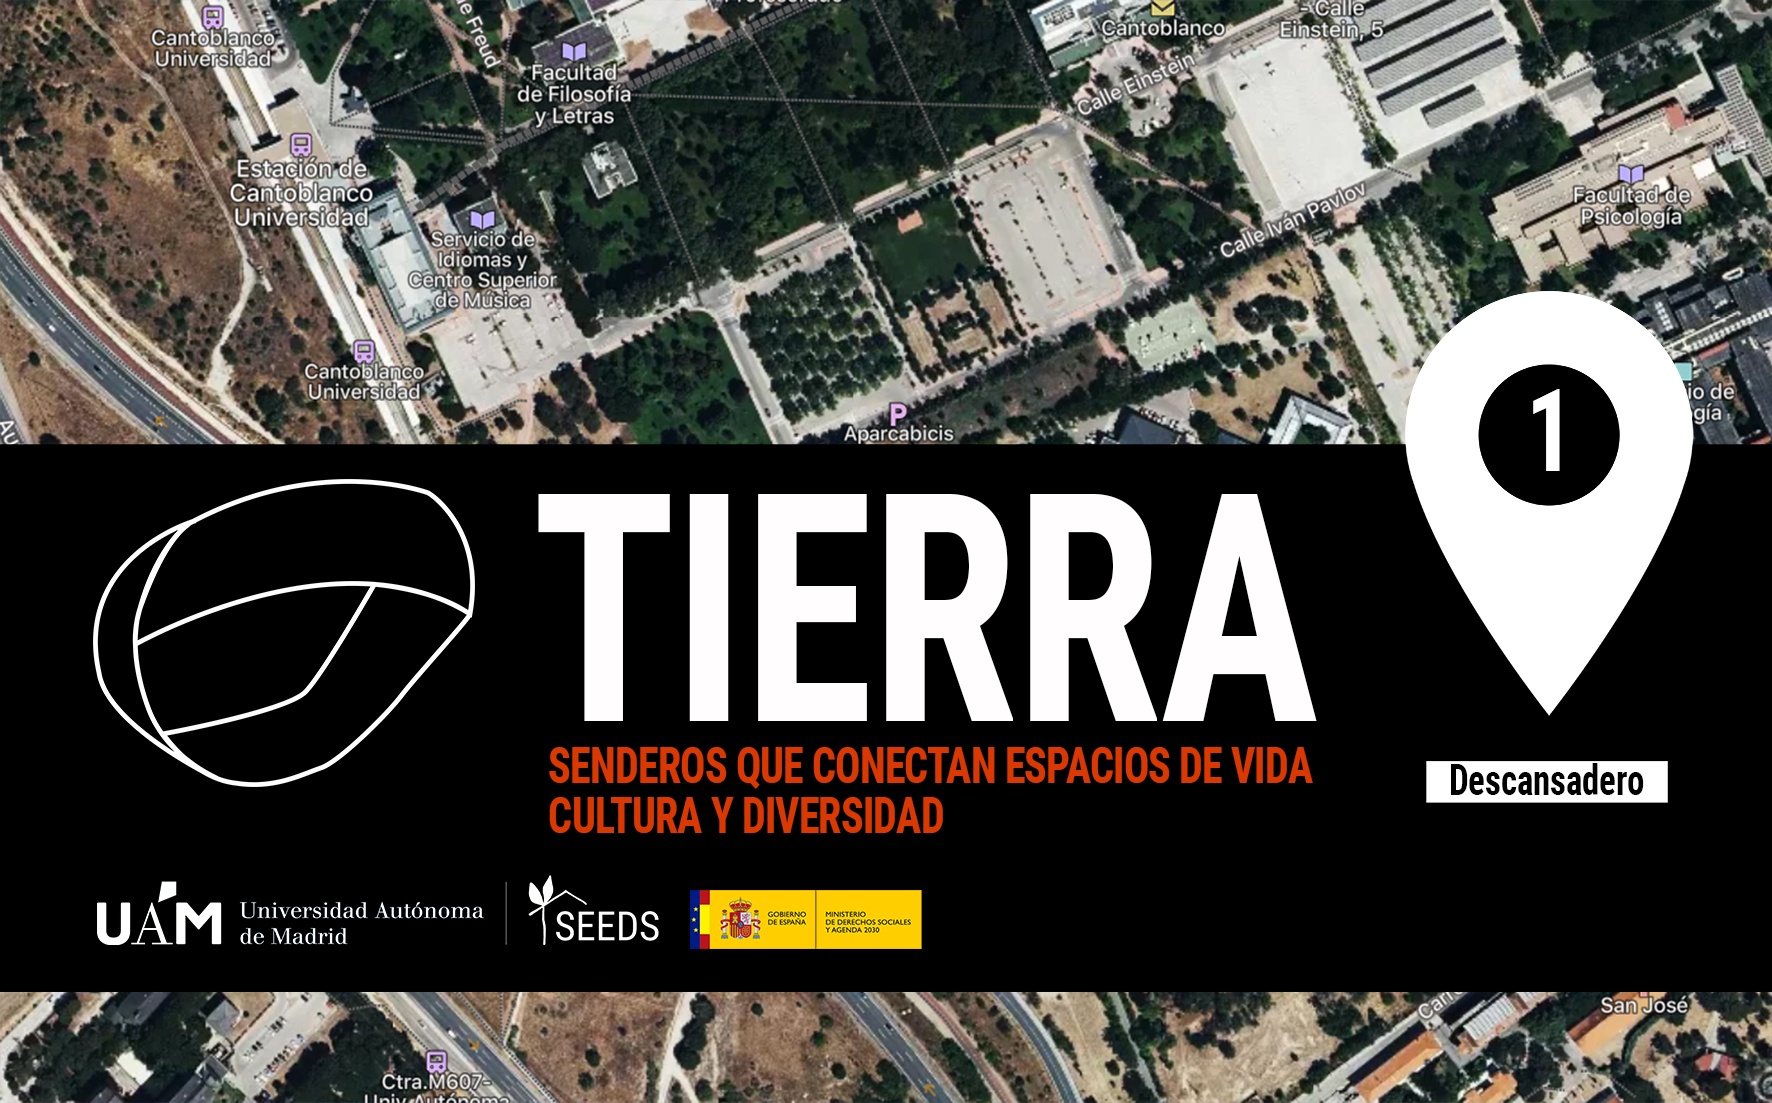 TIERRA: Descansadero 1_Senderos que conectan vida cultura diversidad